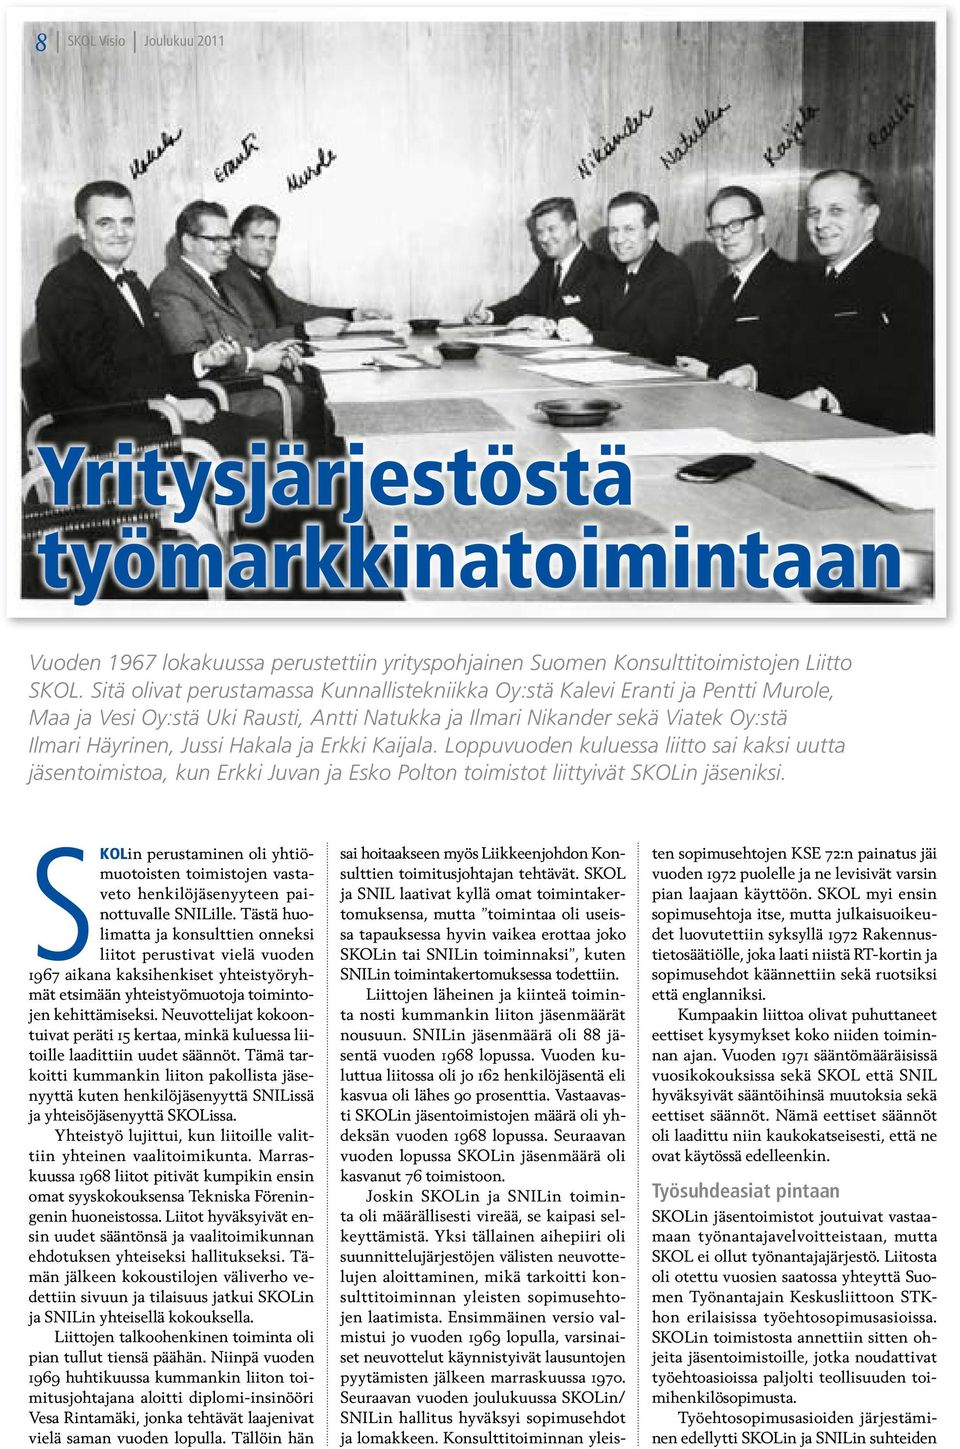 Erkki Kaijala. Loppuvuoden kuluessa liitto sai kaksi uutta jäsentoimistoa, kun Erkki Juvan ja Esko Polton toimistot liittyivät SKOLin jäseniksi.